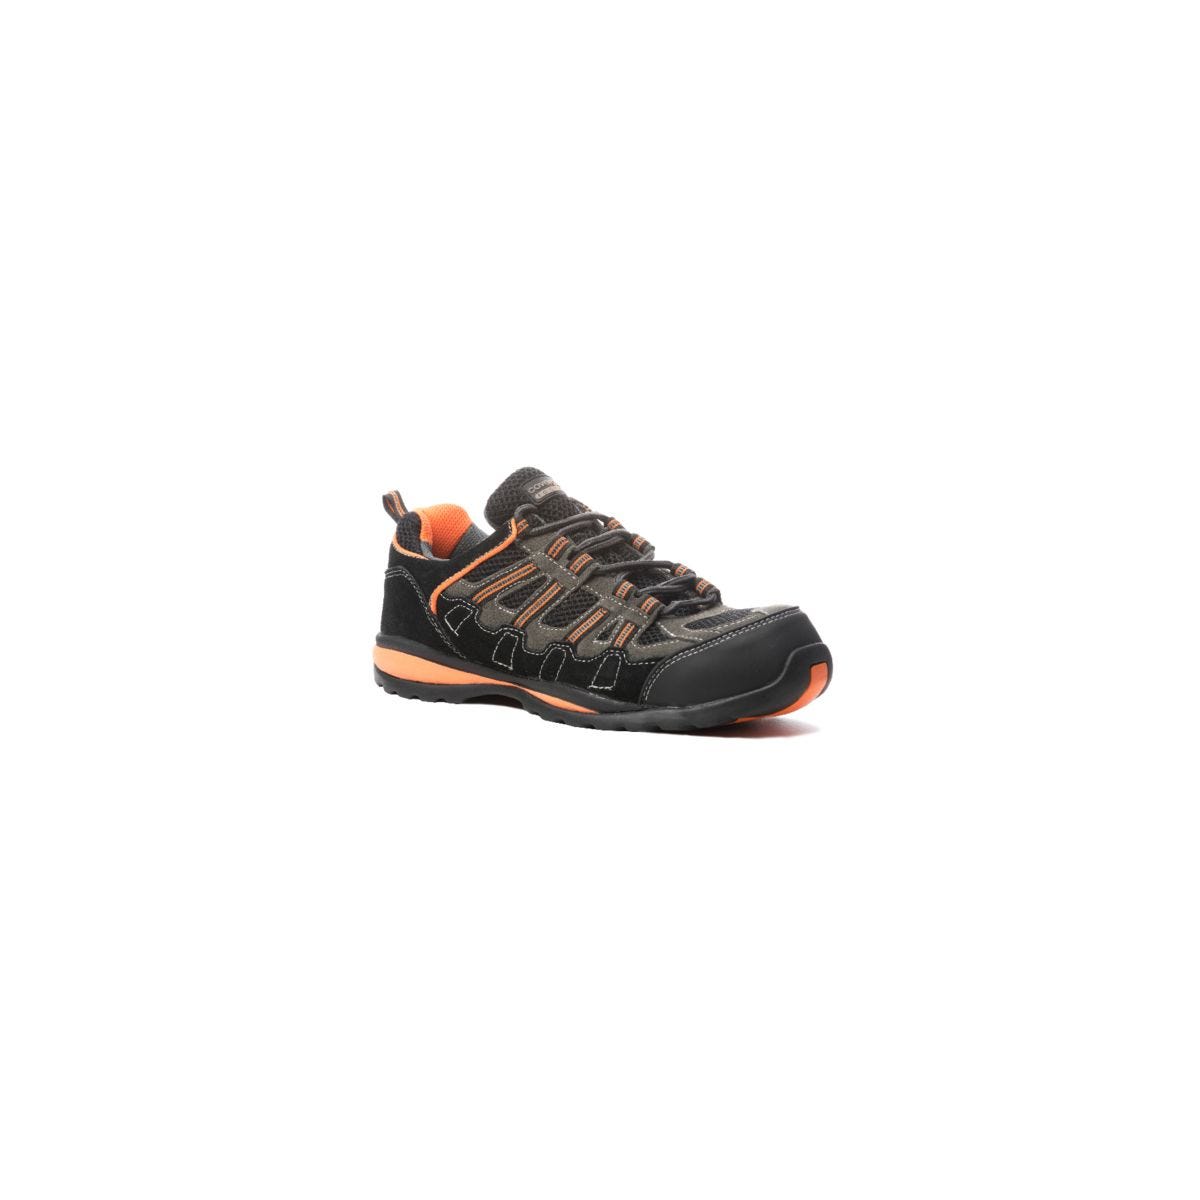 Chaussures de sécurité HELVITE S1P composite noir/orange - COVERGUARD - Taille 40 0